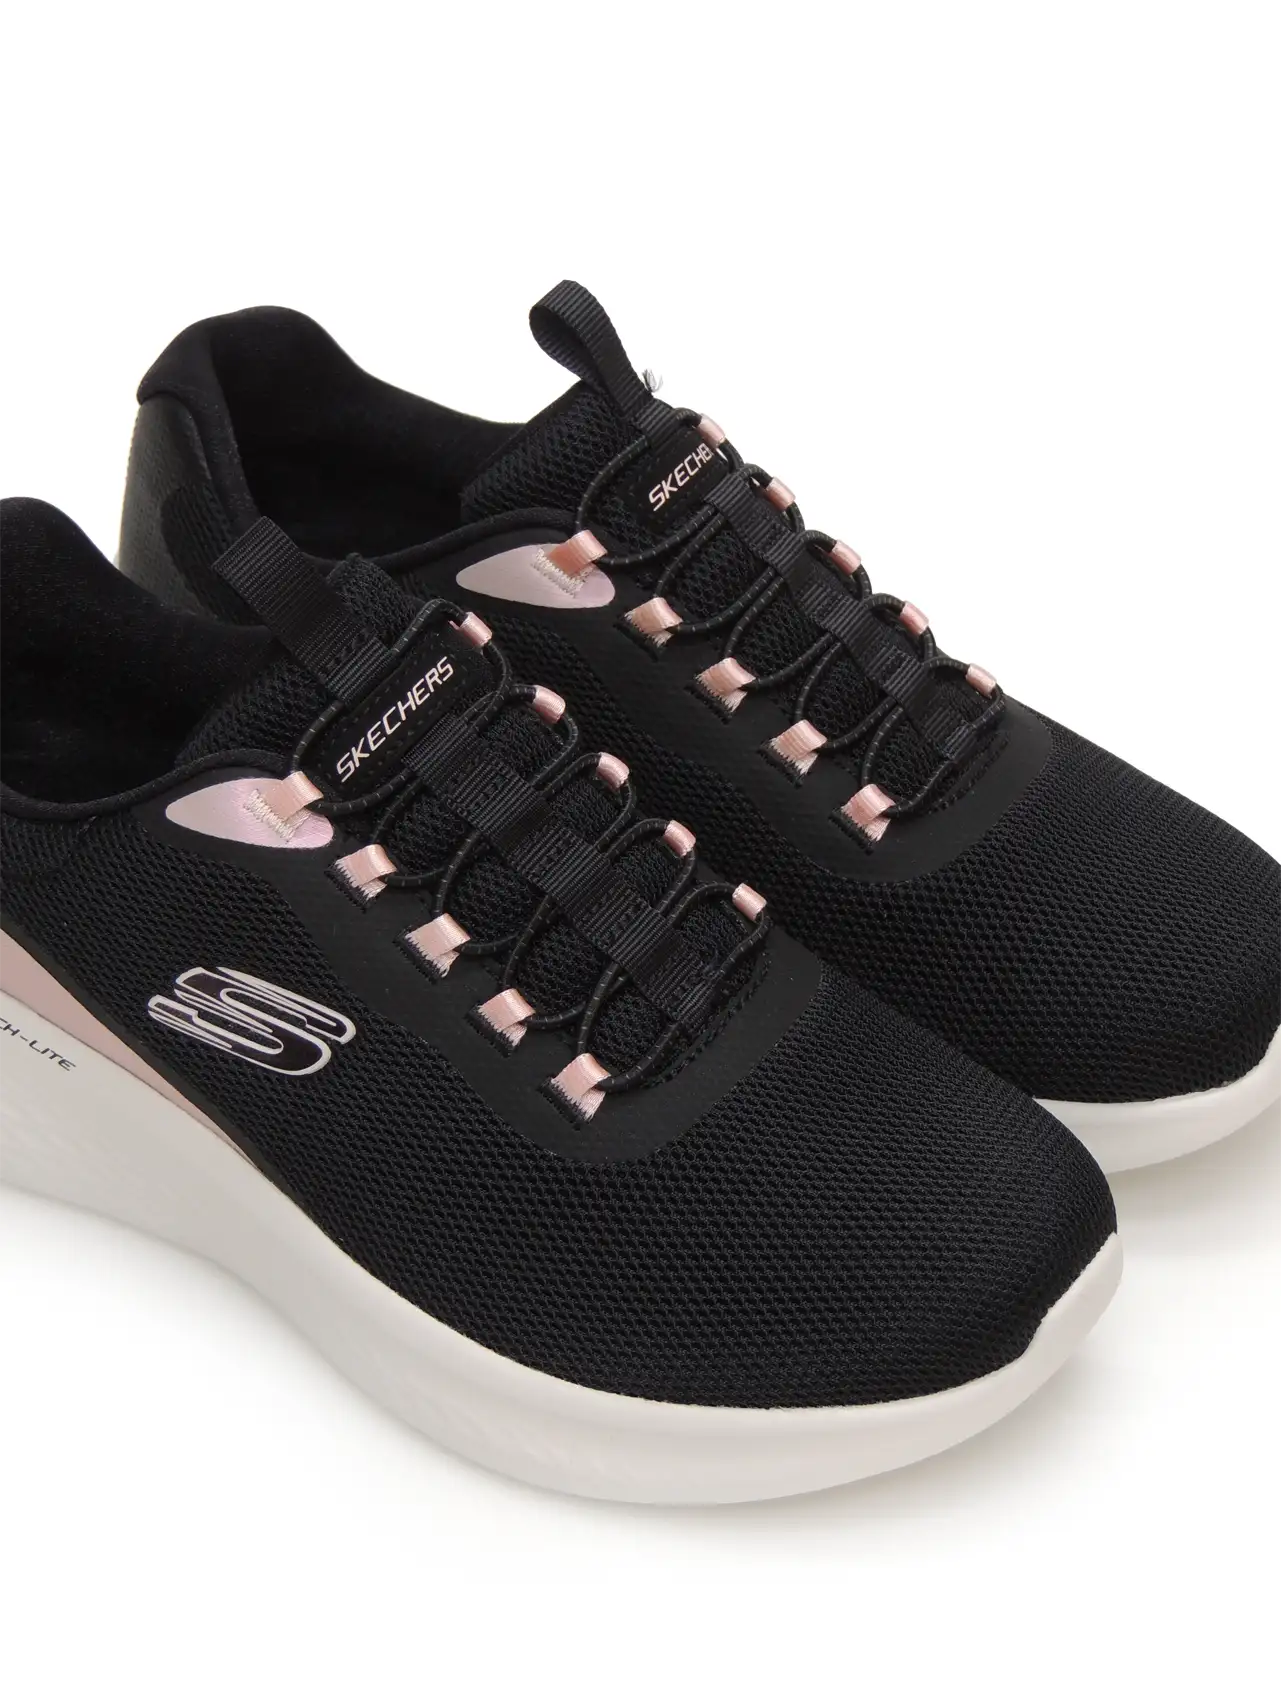 sneakers--skechers-150041-textil-negro